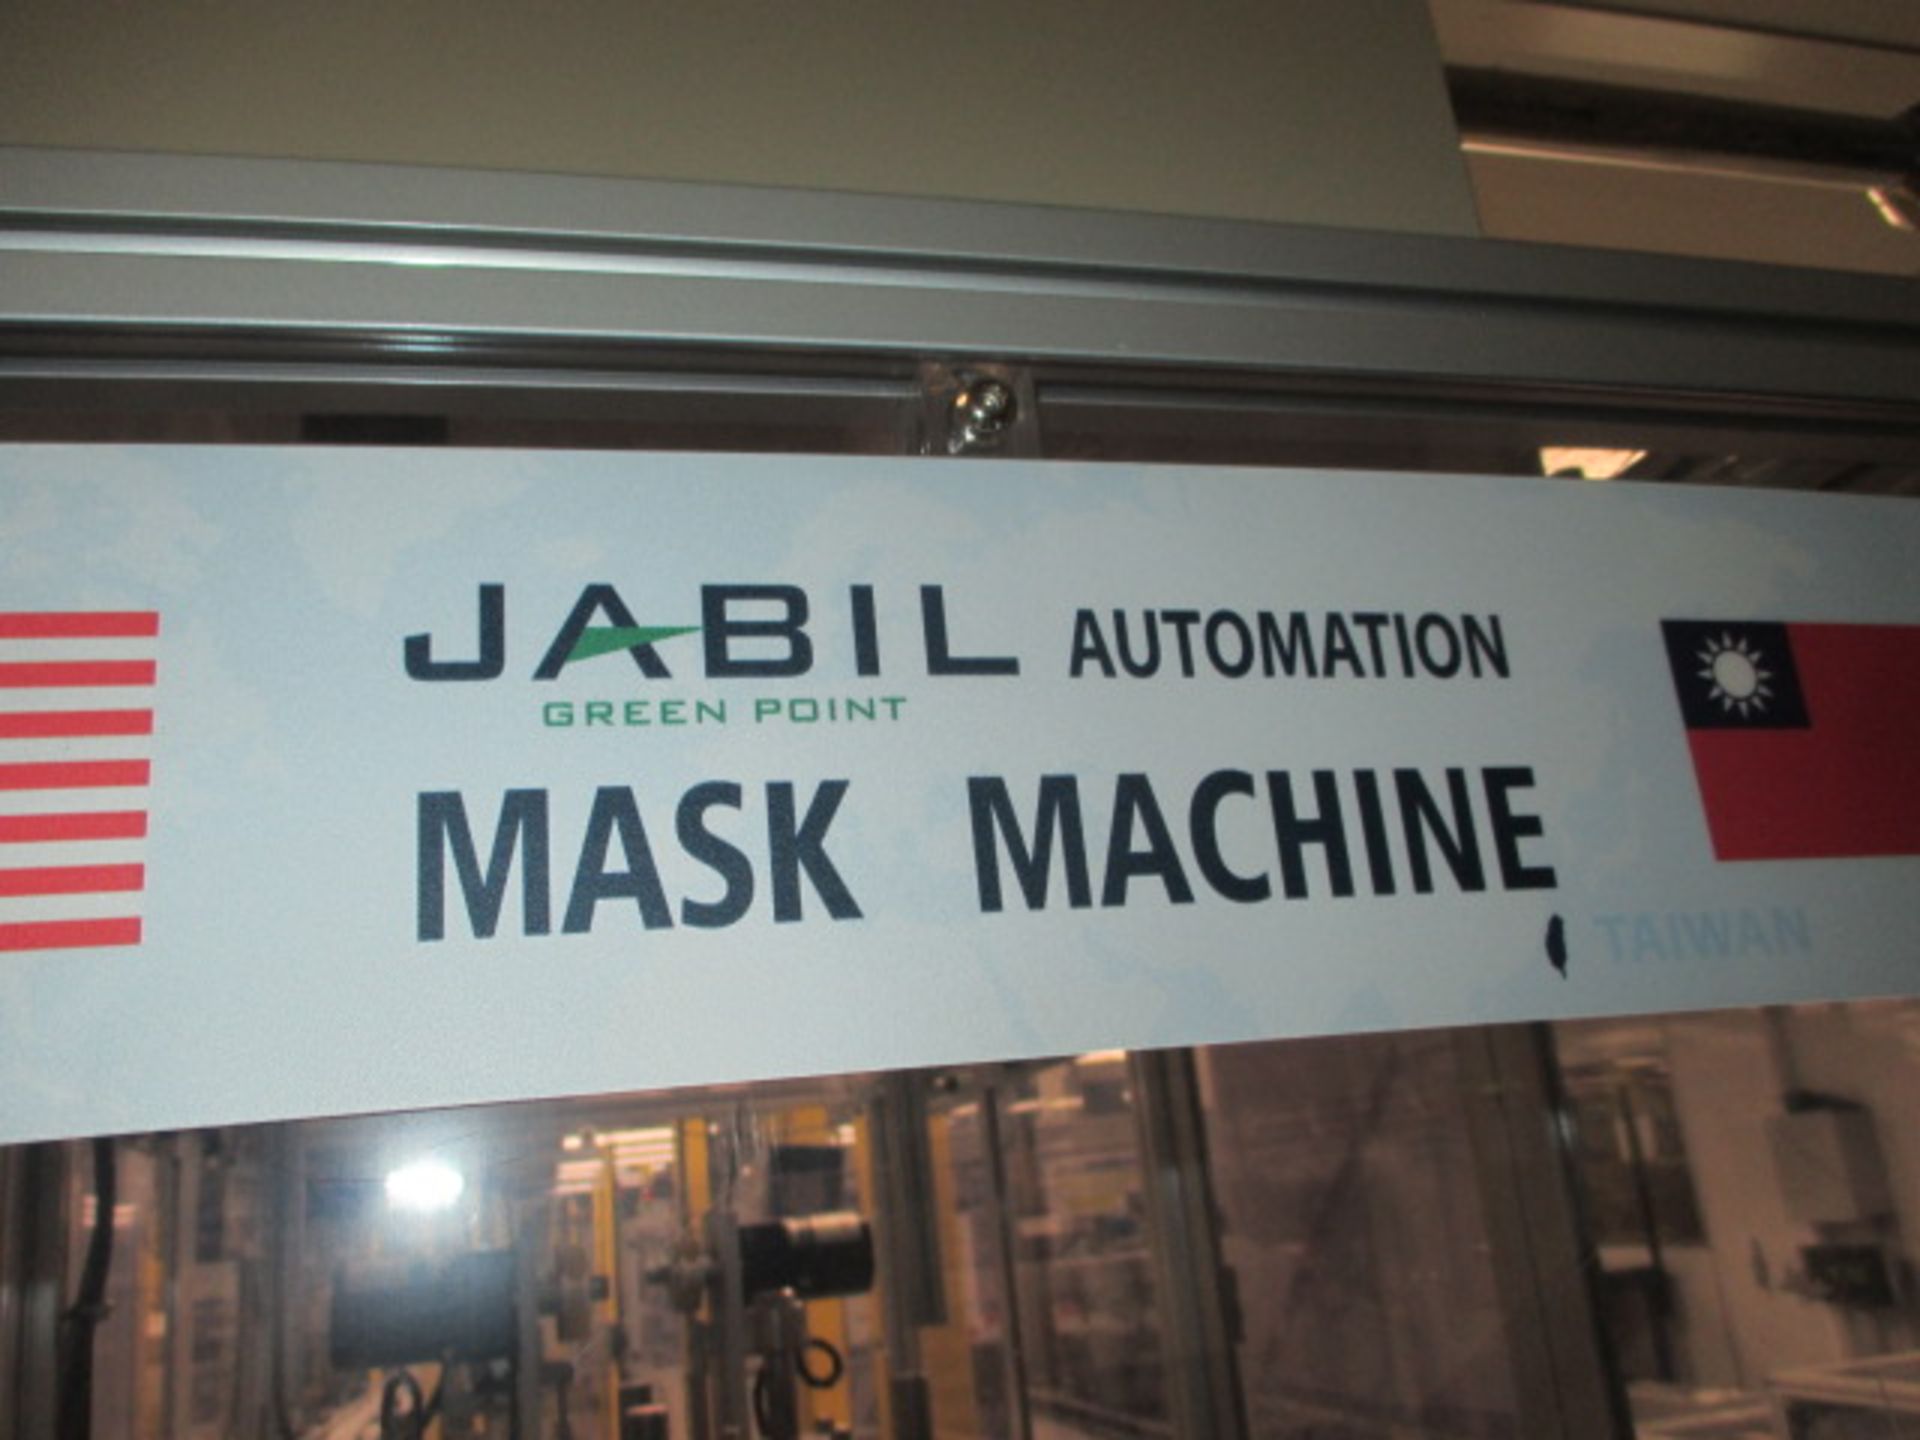 Jabil Mask Machine - Image 8 of 8